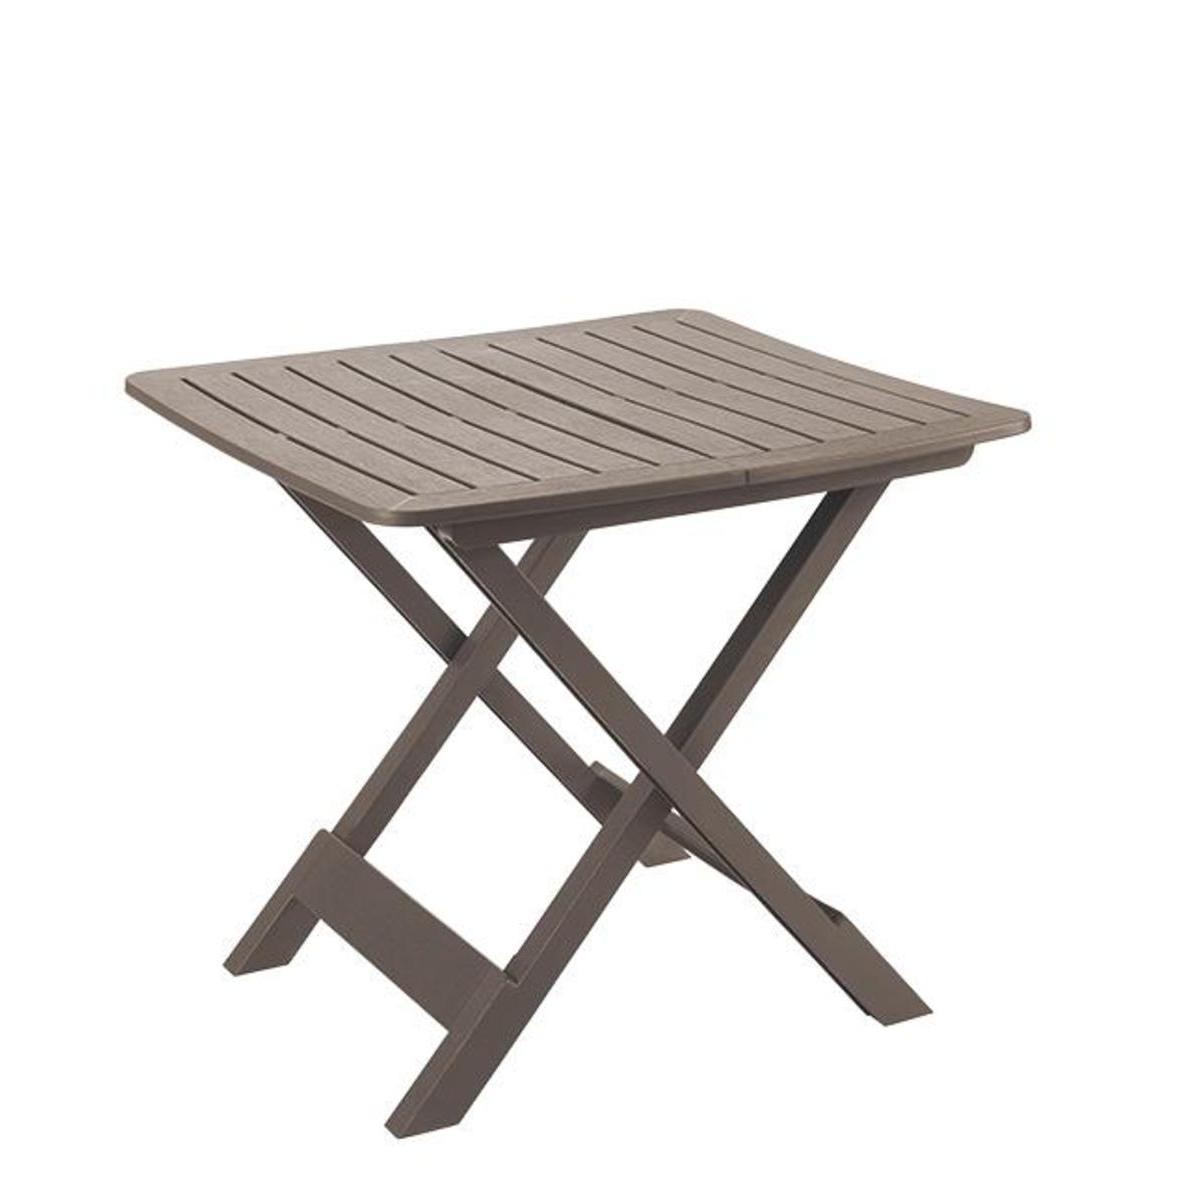 Table pliante imitation bois - 79 x H 70 x 72 cm - Marron taupe